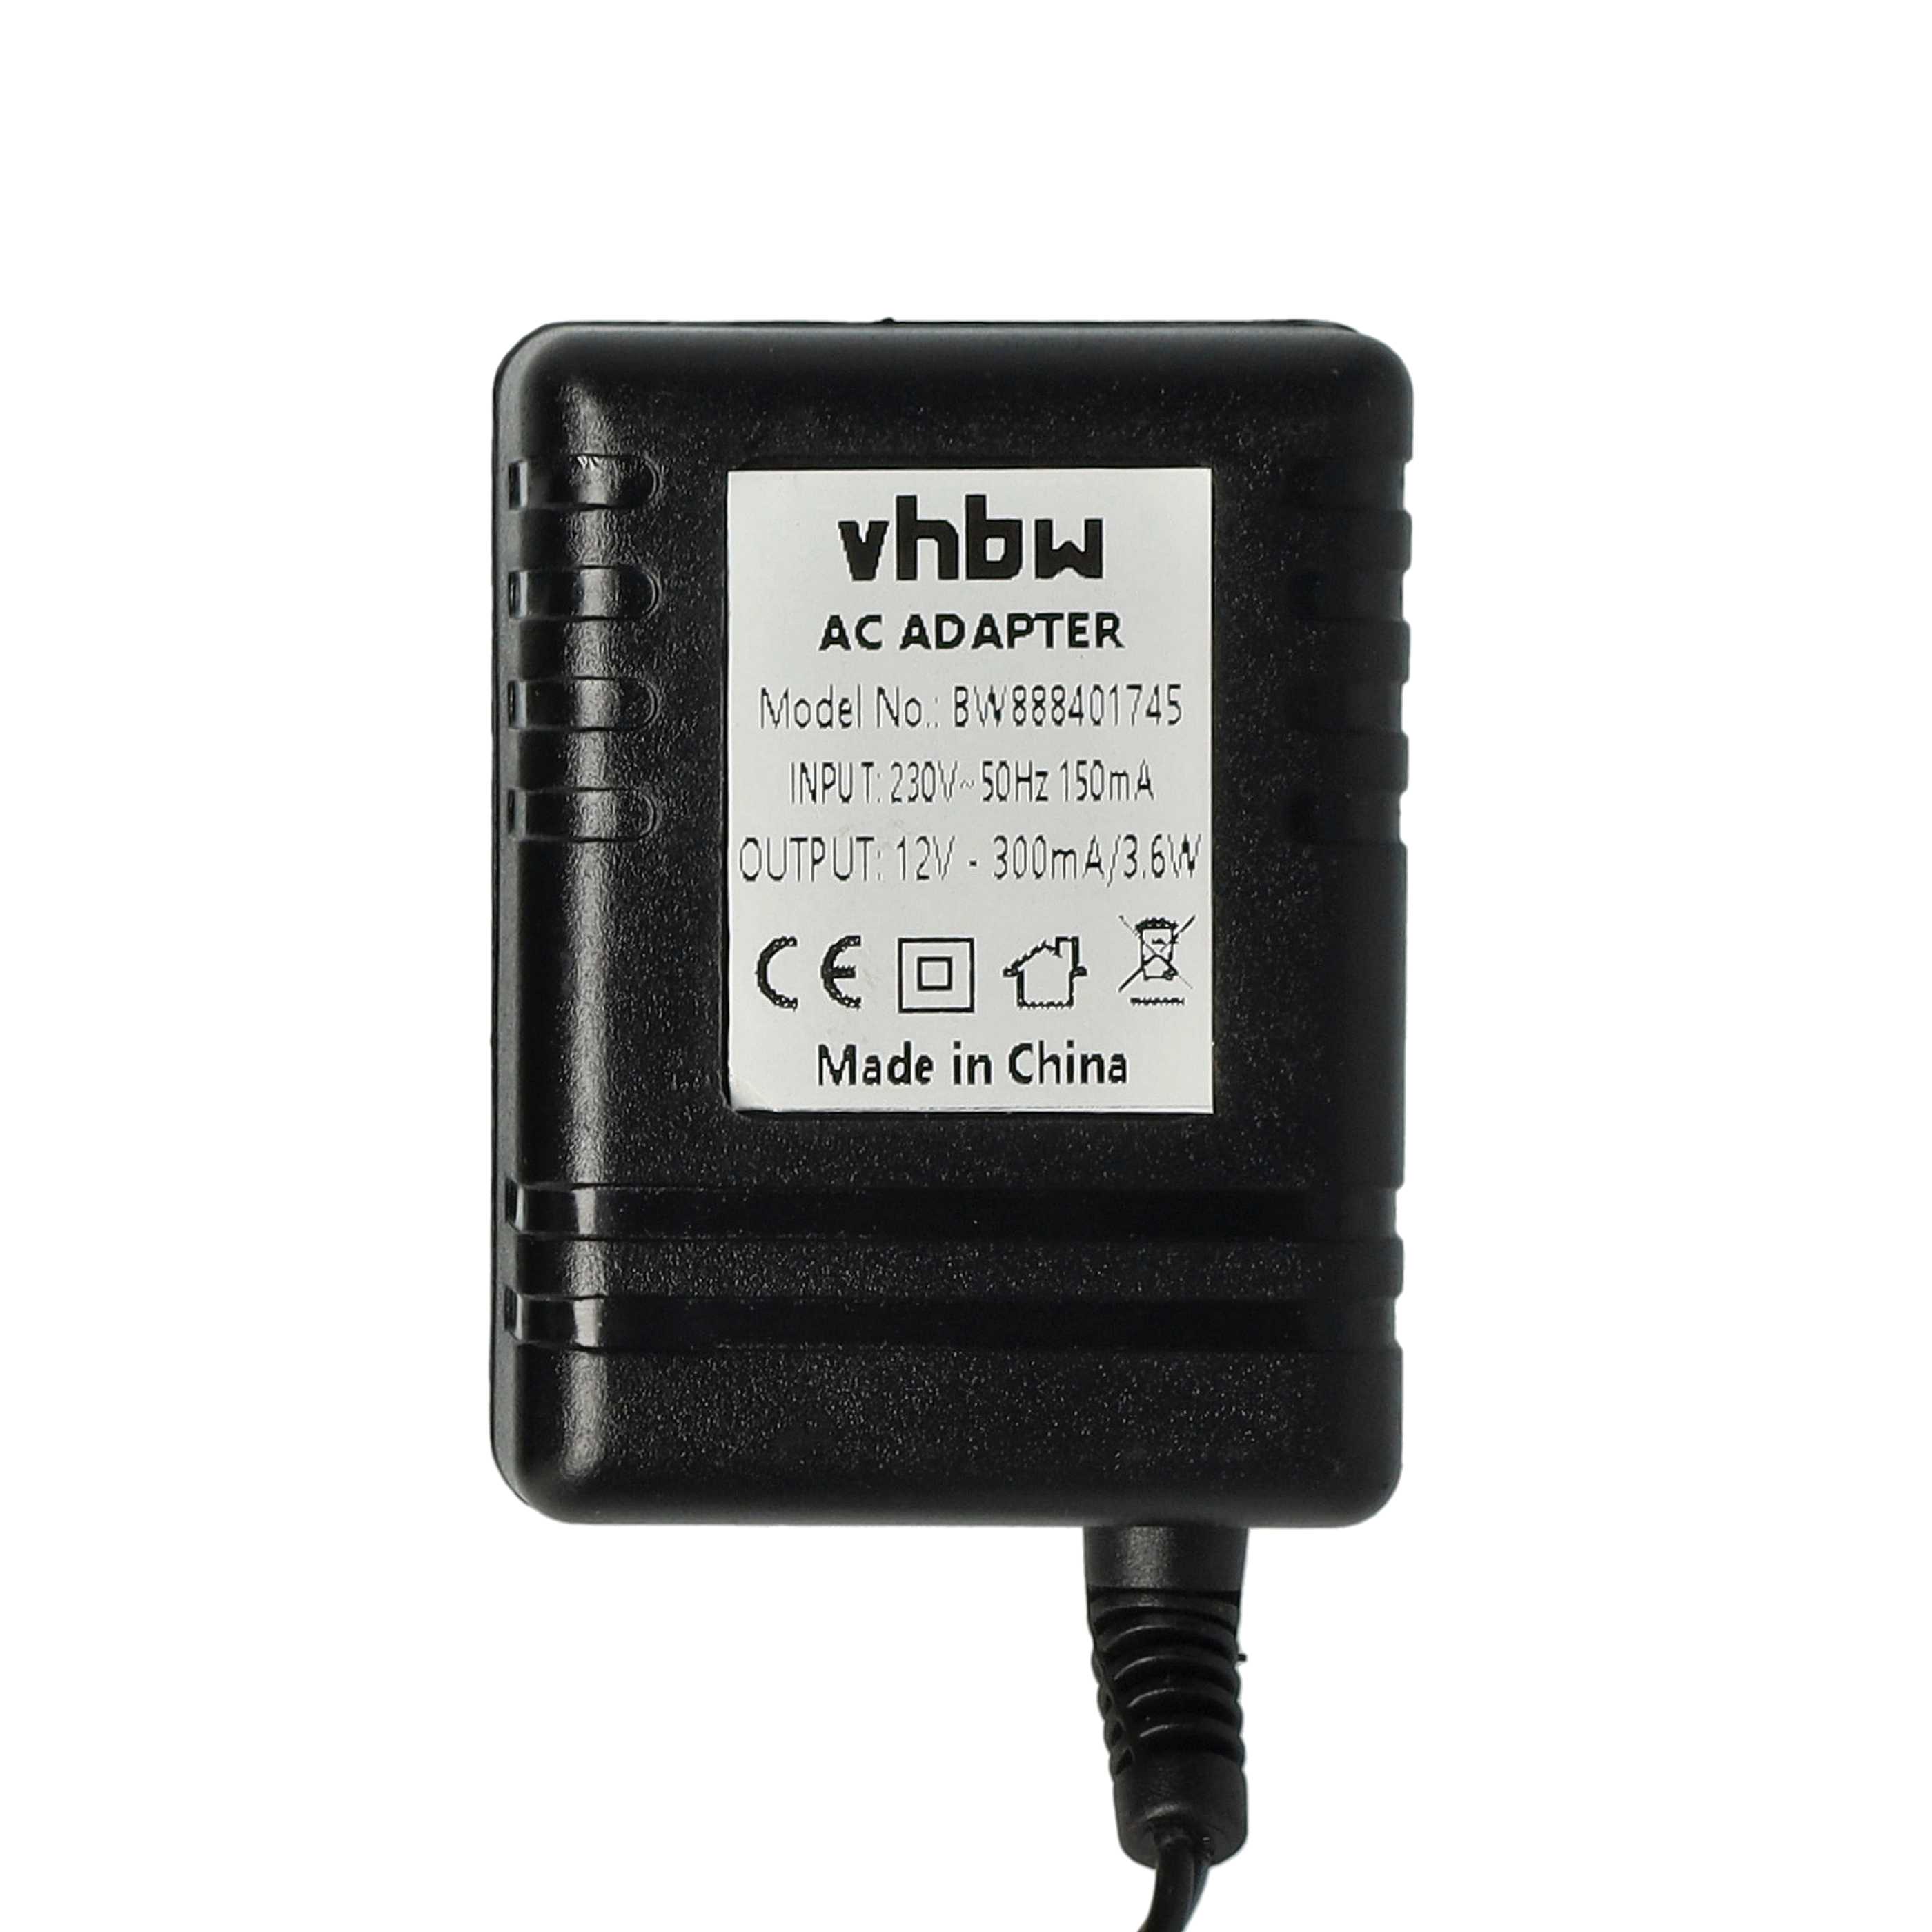 Caricabatterie + alimentatore per batterie per radio IC-F3001 - 12,0 V, 1.6 A